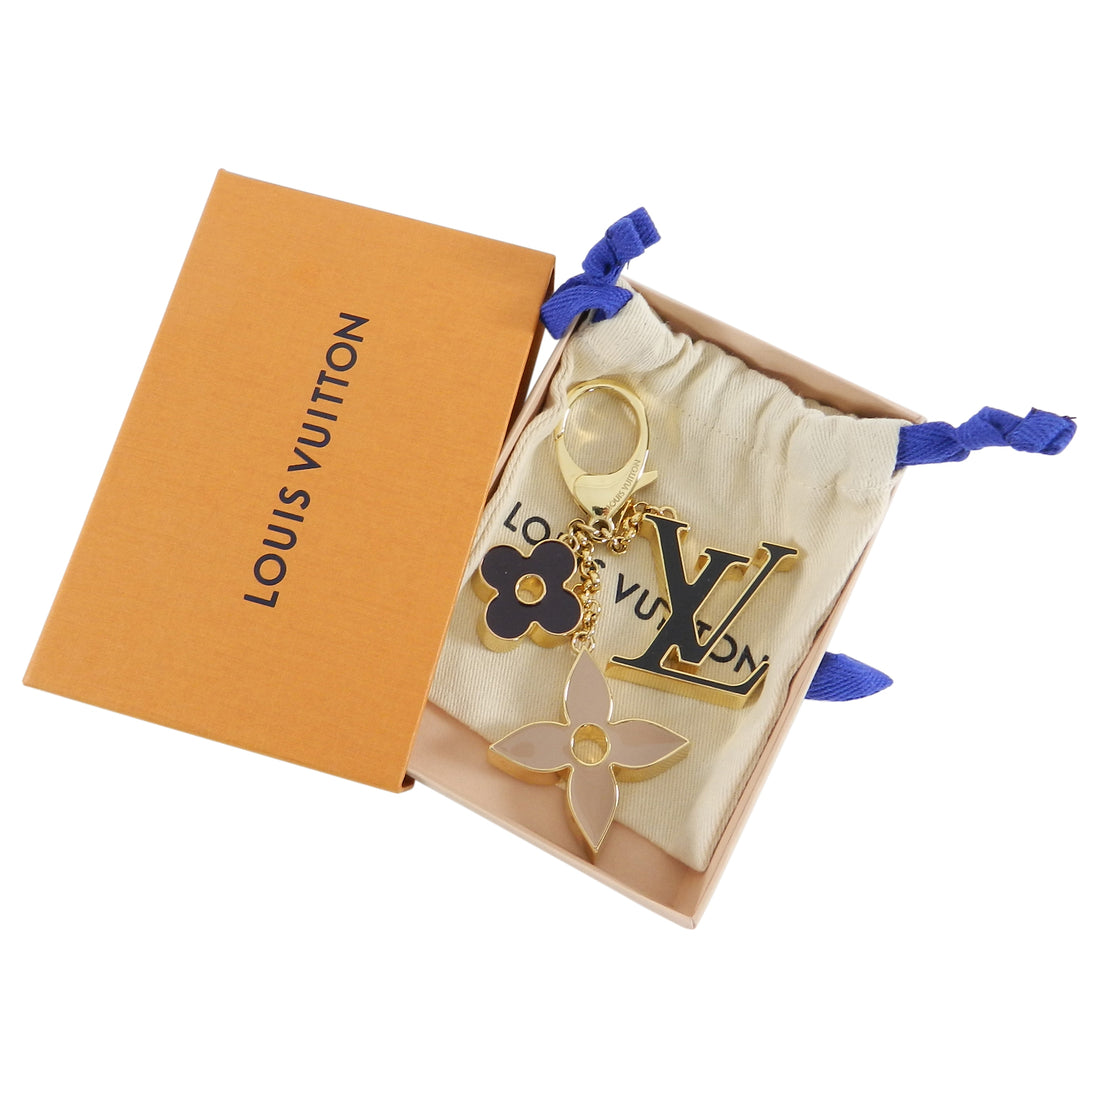 Louis Vuitton, Accessories, Louis Vuitton Fleur De Monogram Dore Bag Charm